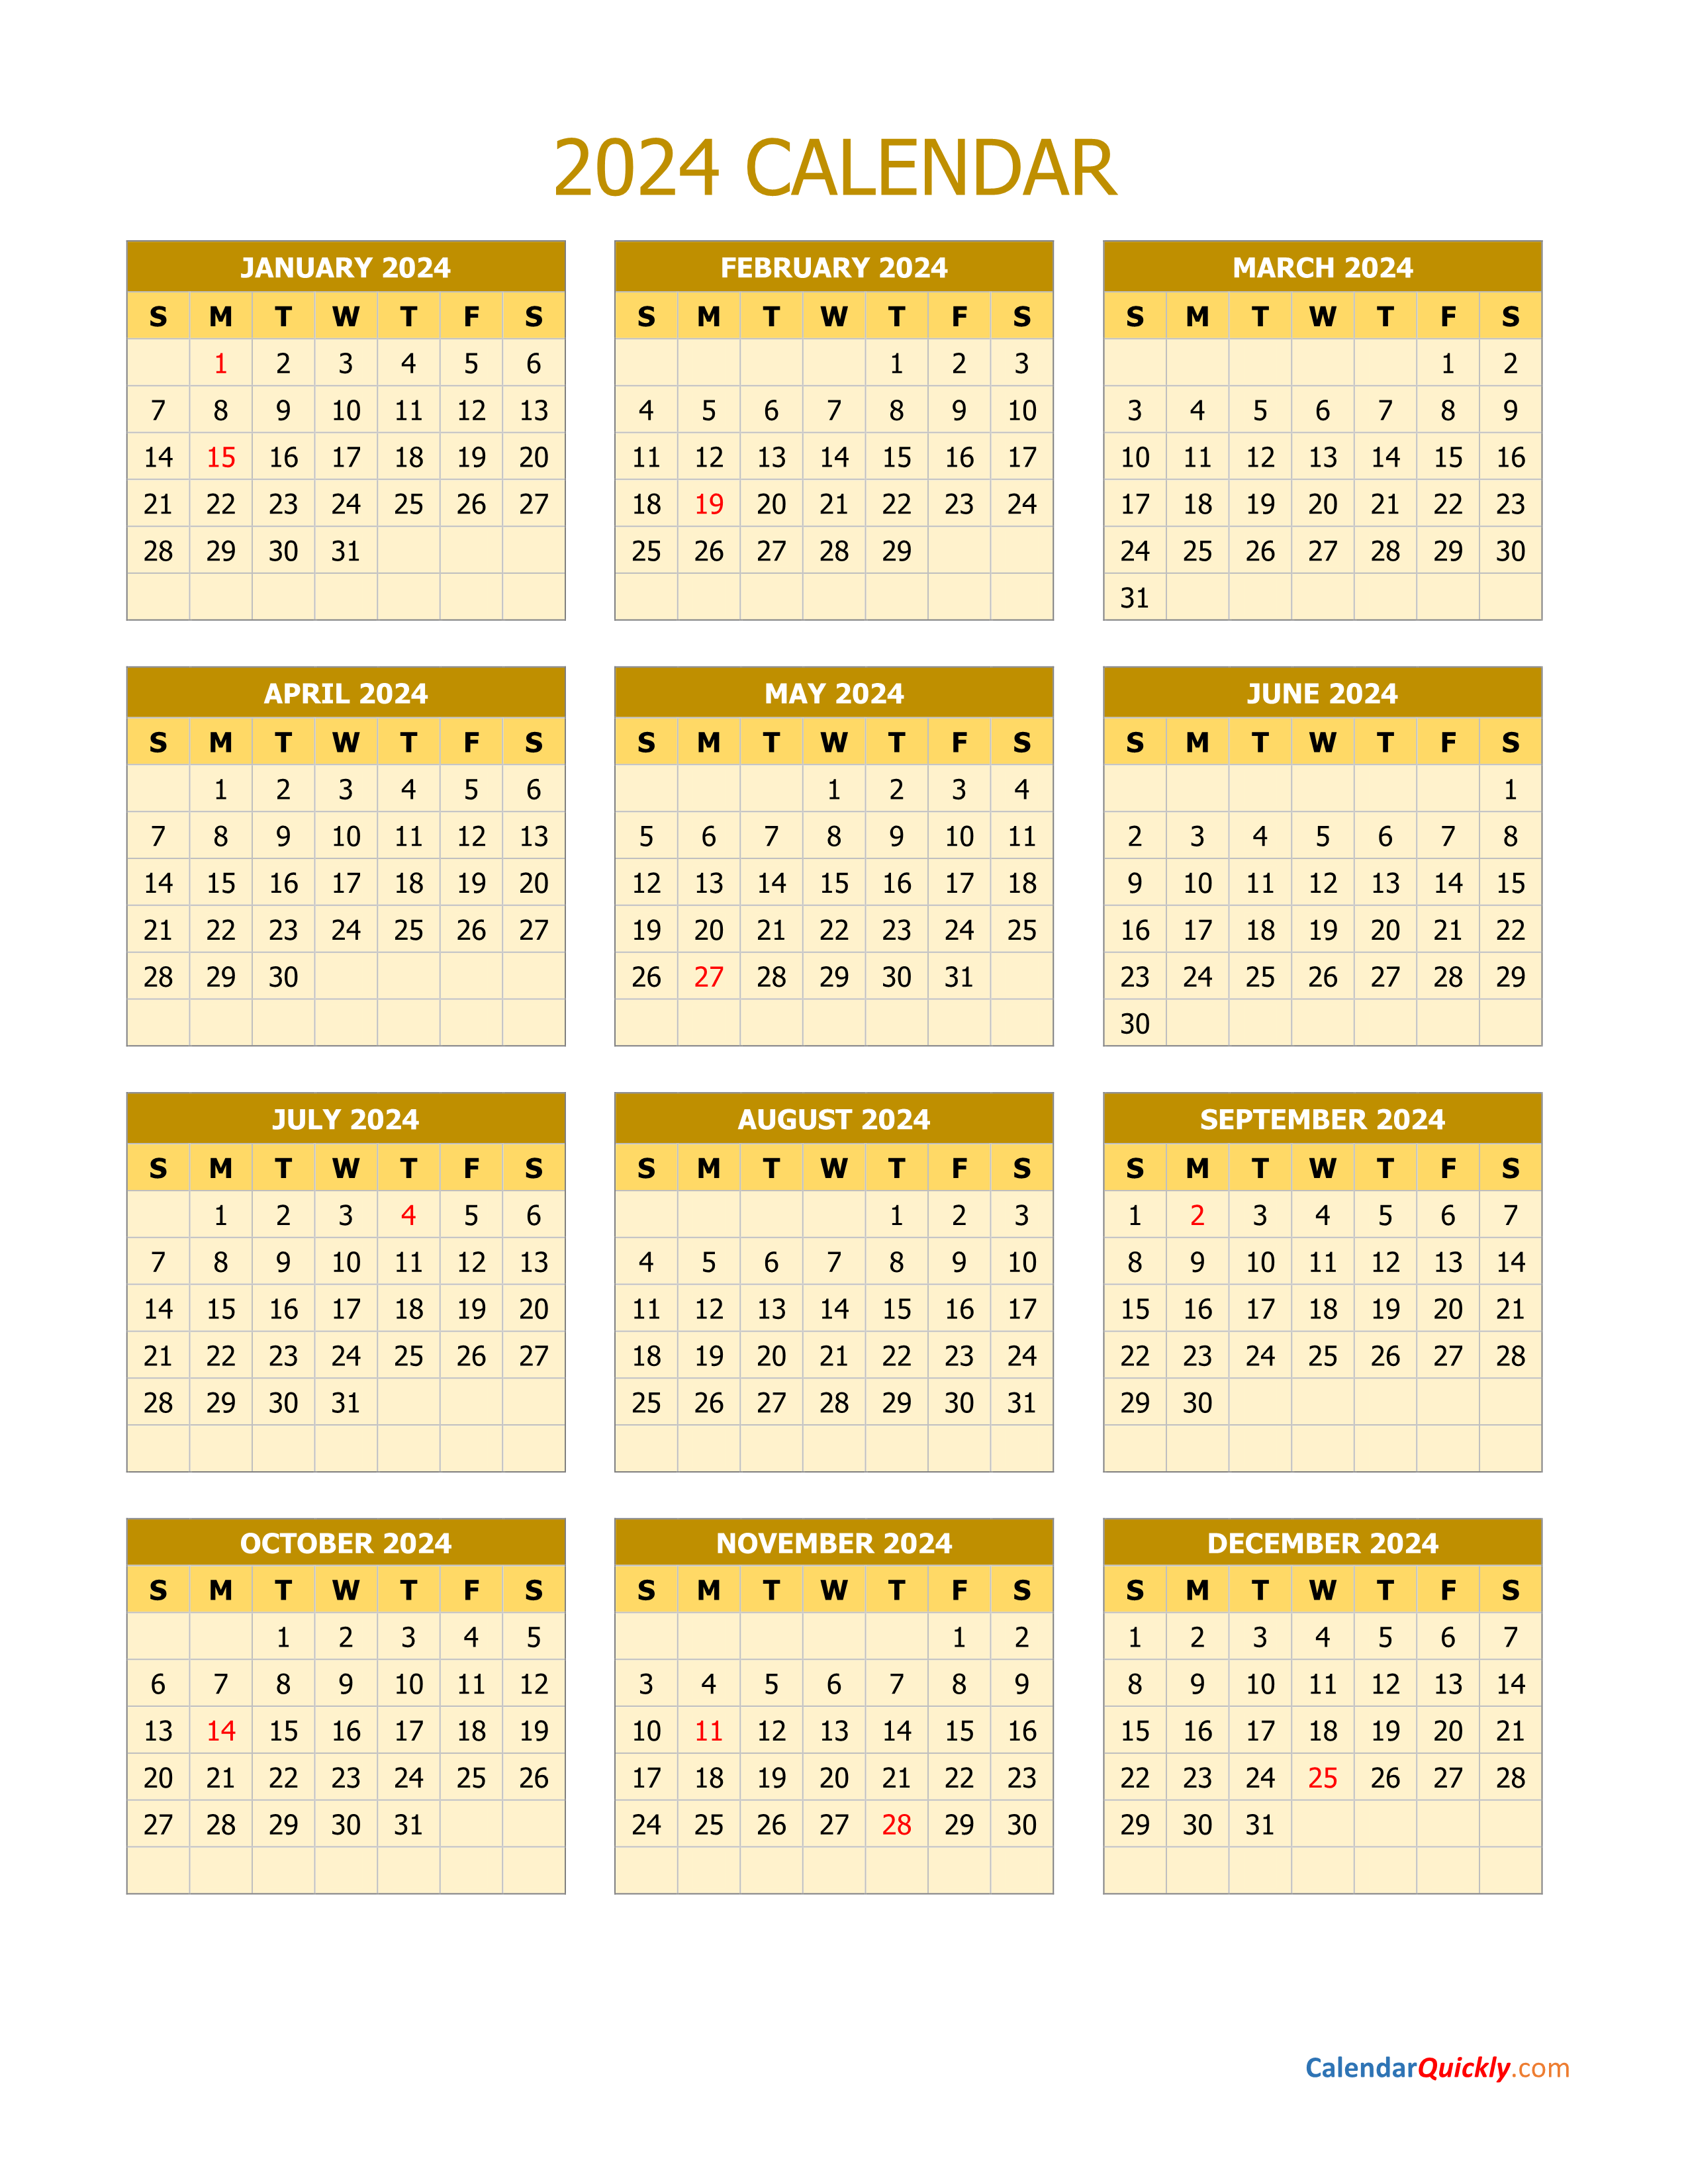 2024 Calendar Vertical Calendar Quickly - Free Printable 2024 Yearly Calendar Vertical